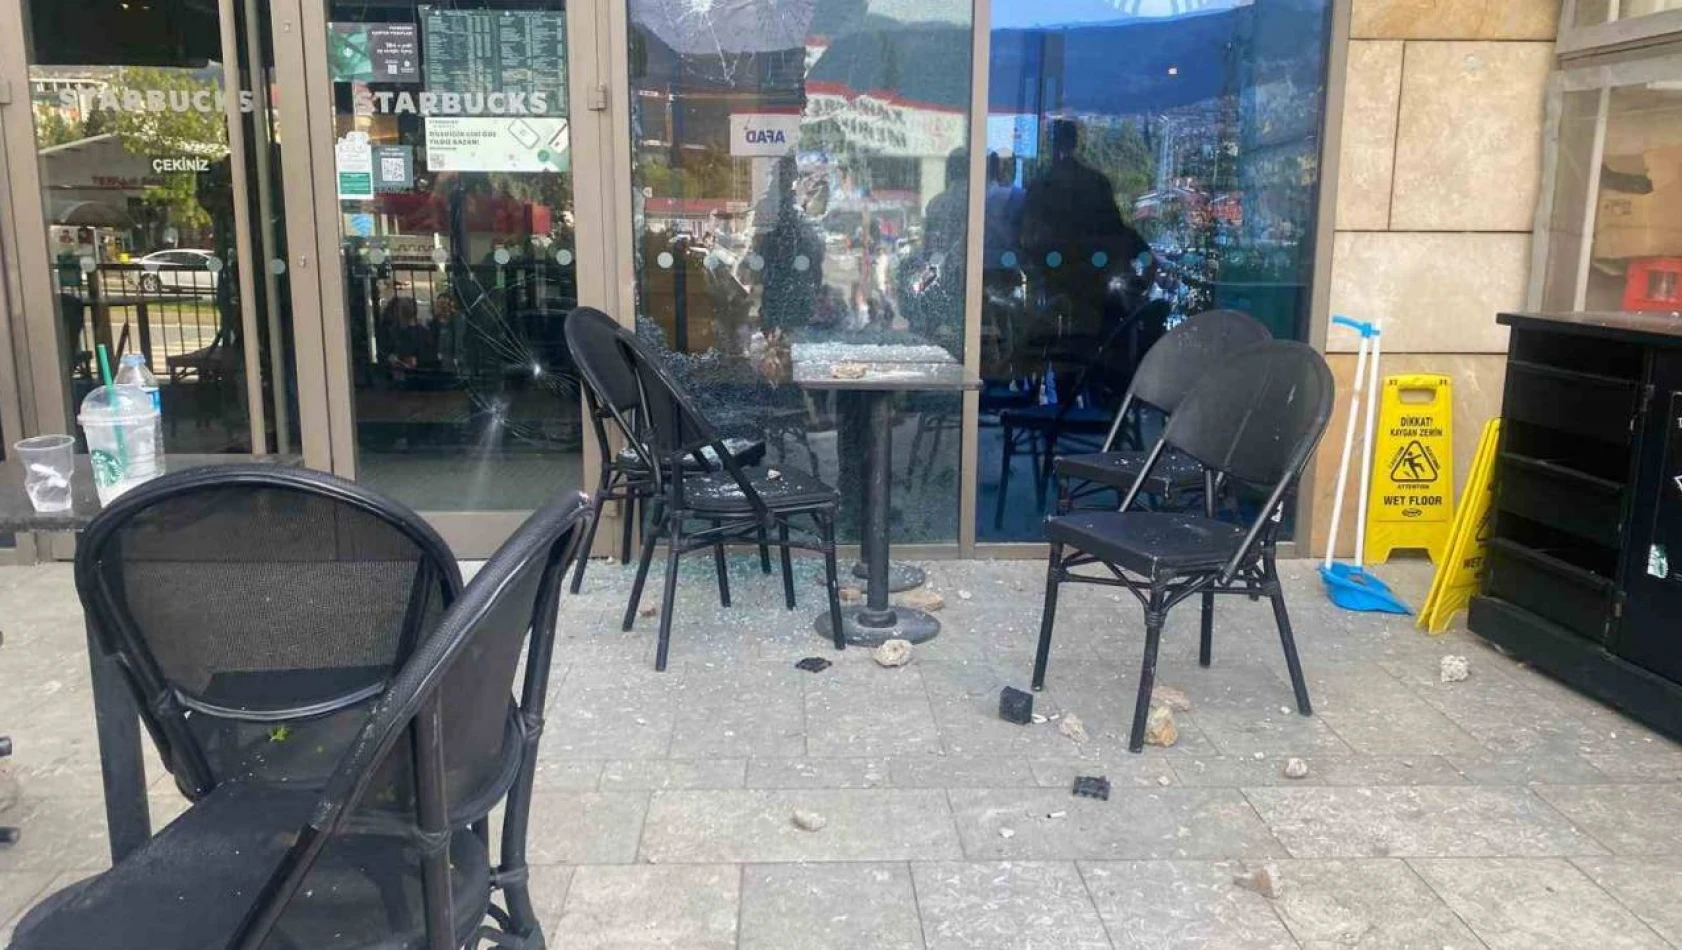 Kahramanmaraş'ta Starbucks'a taşlı silahlı saldırı!